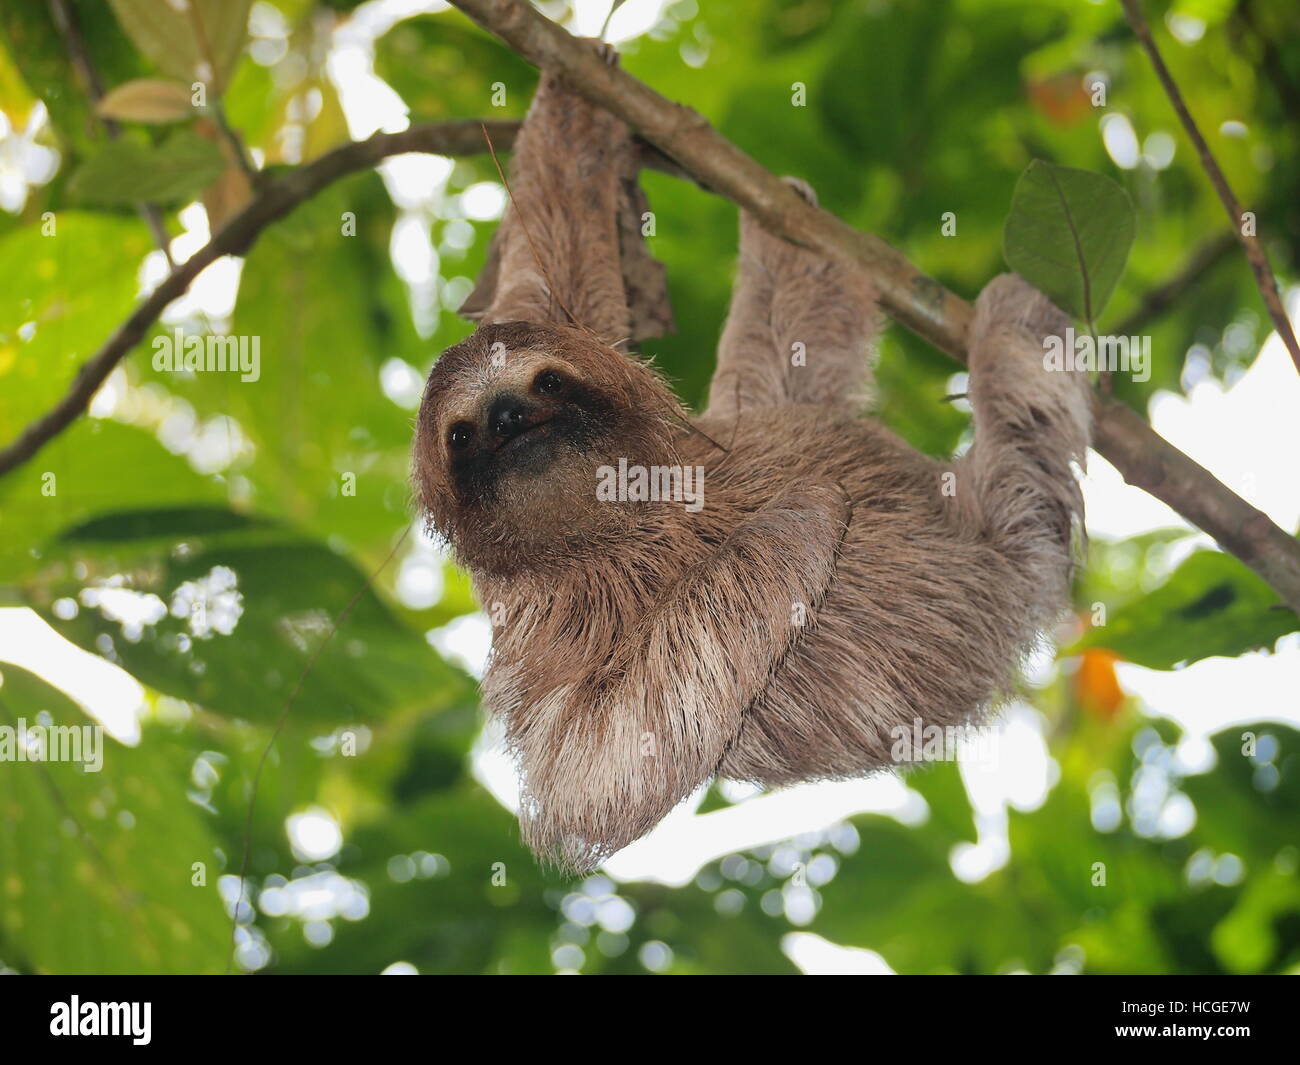 Lindo perezoso, Bradypus variegatus, colgando de una rama en el bosque, animales salvajes, Panamá, América Central Foto de stock